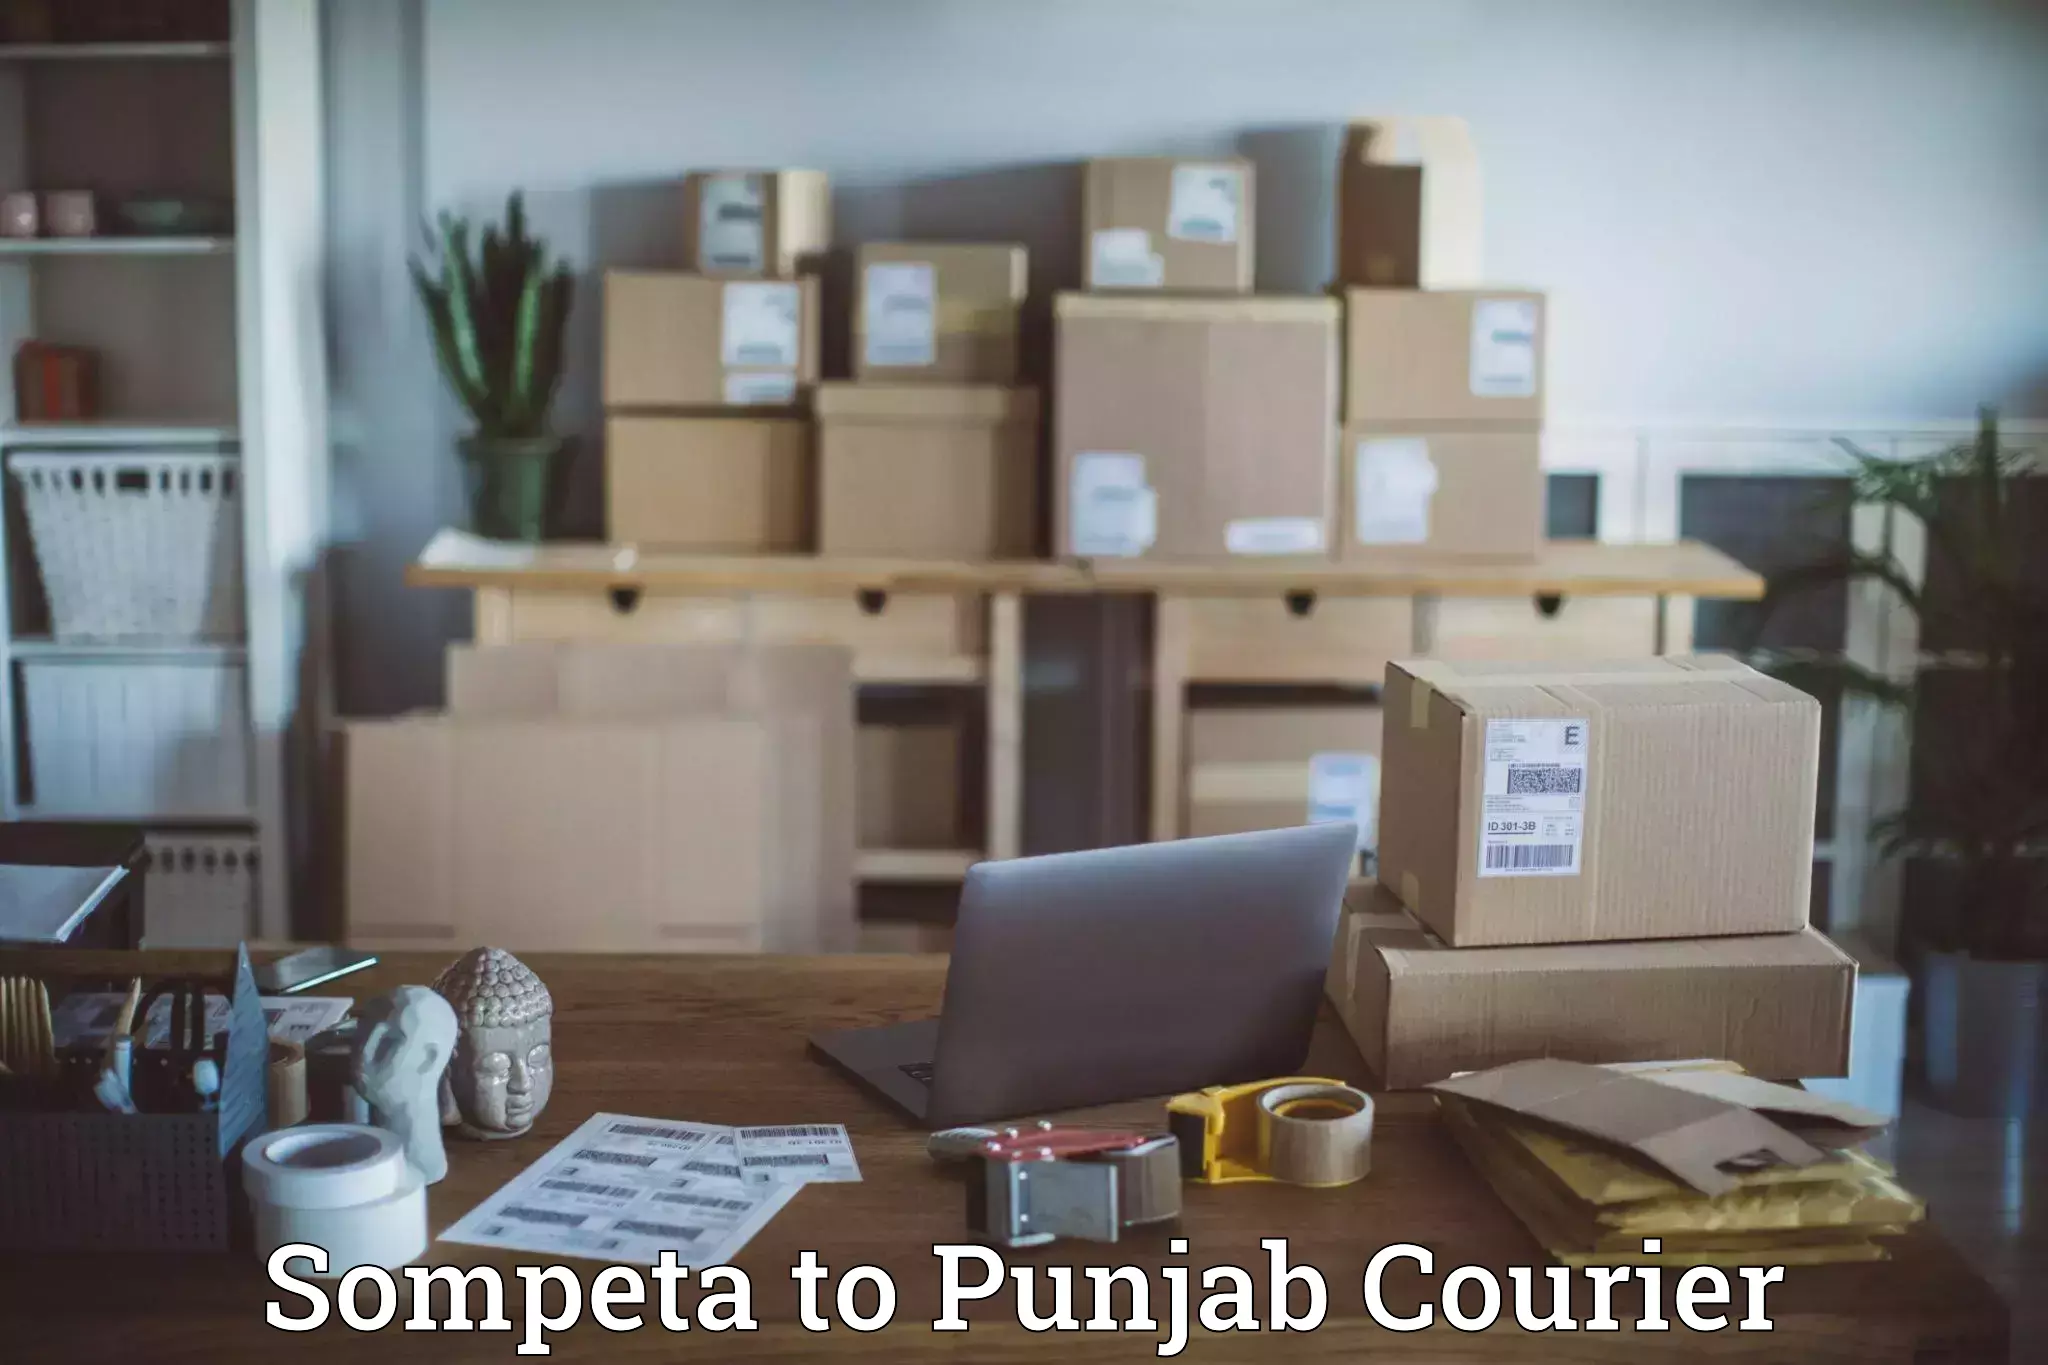 Urban courier service Sompeta to Punjab